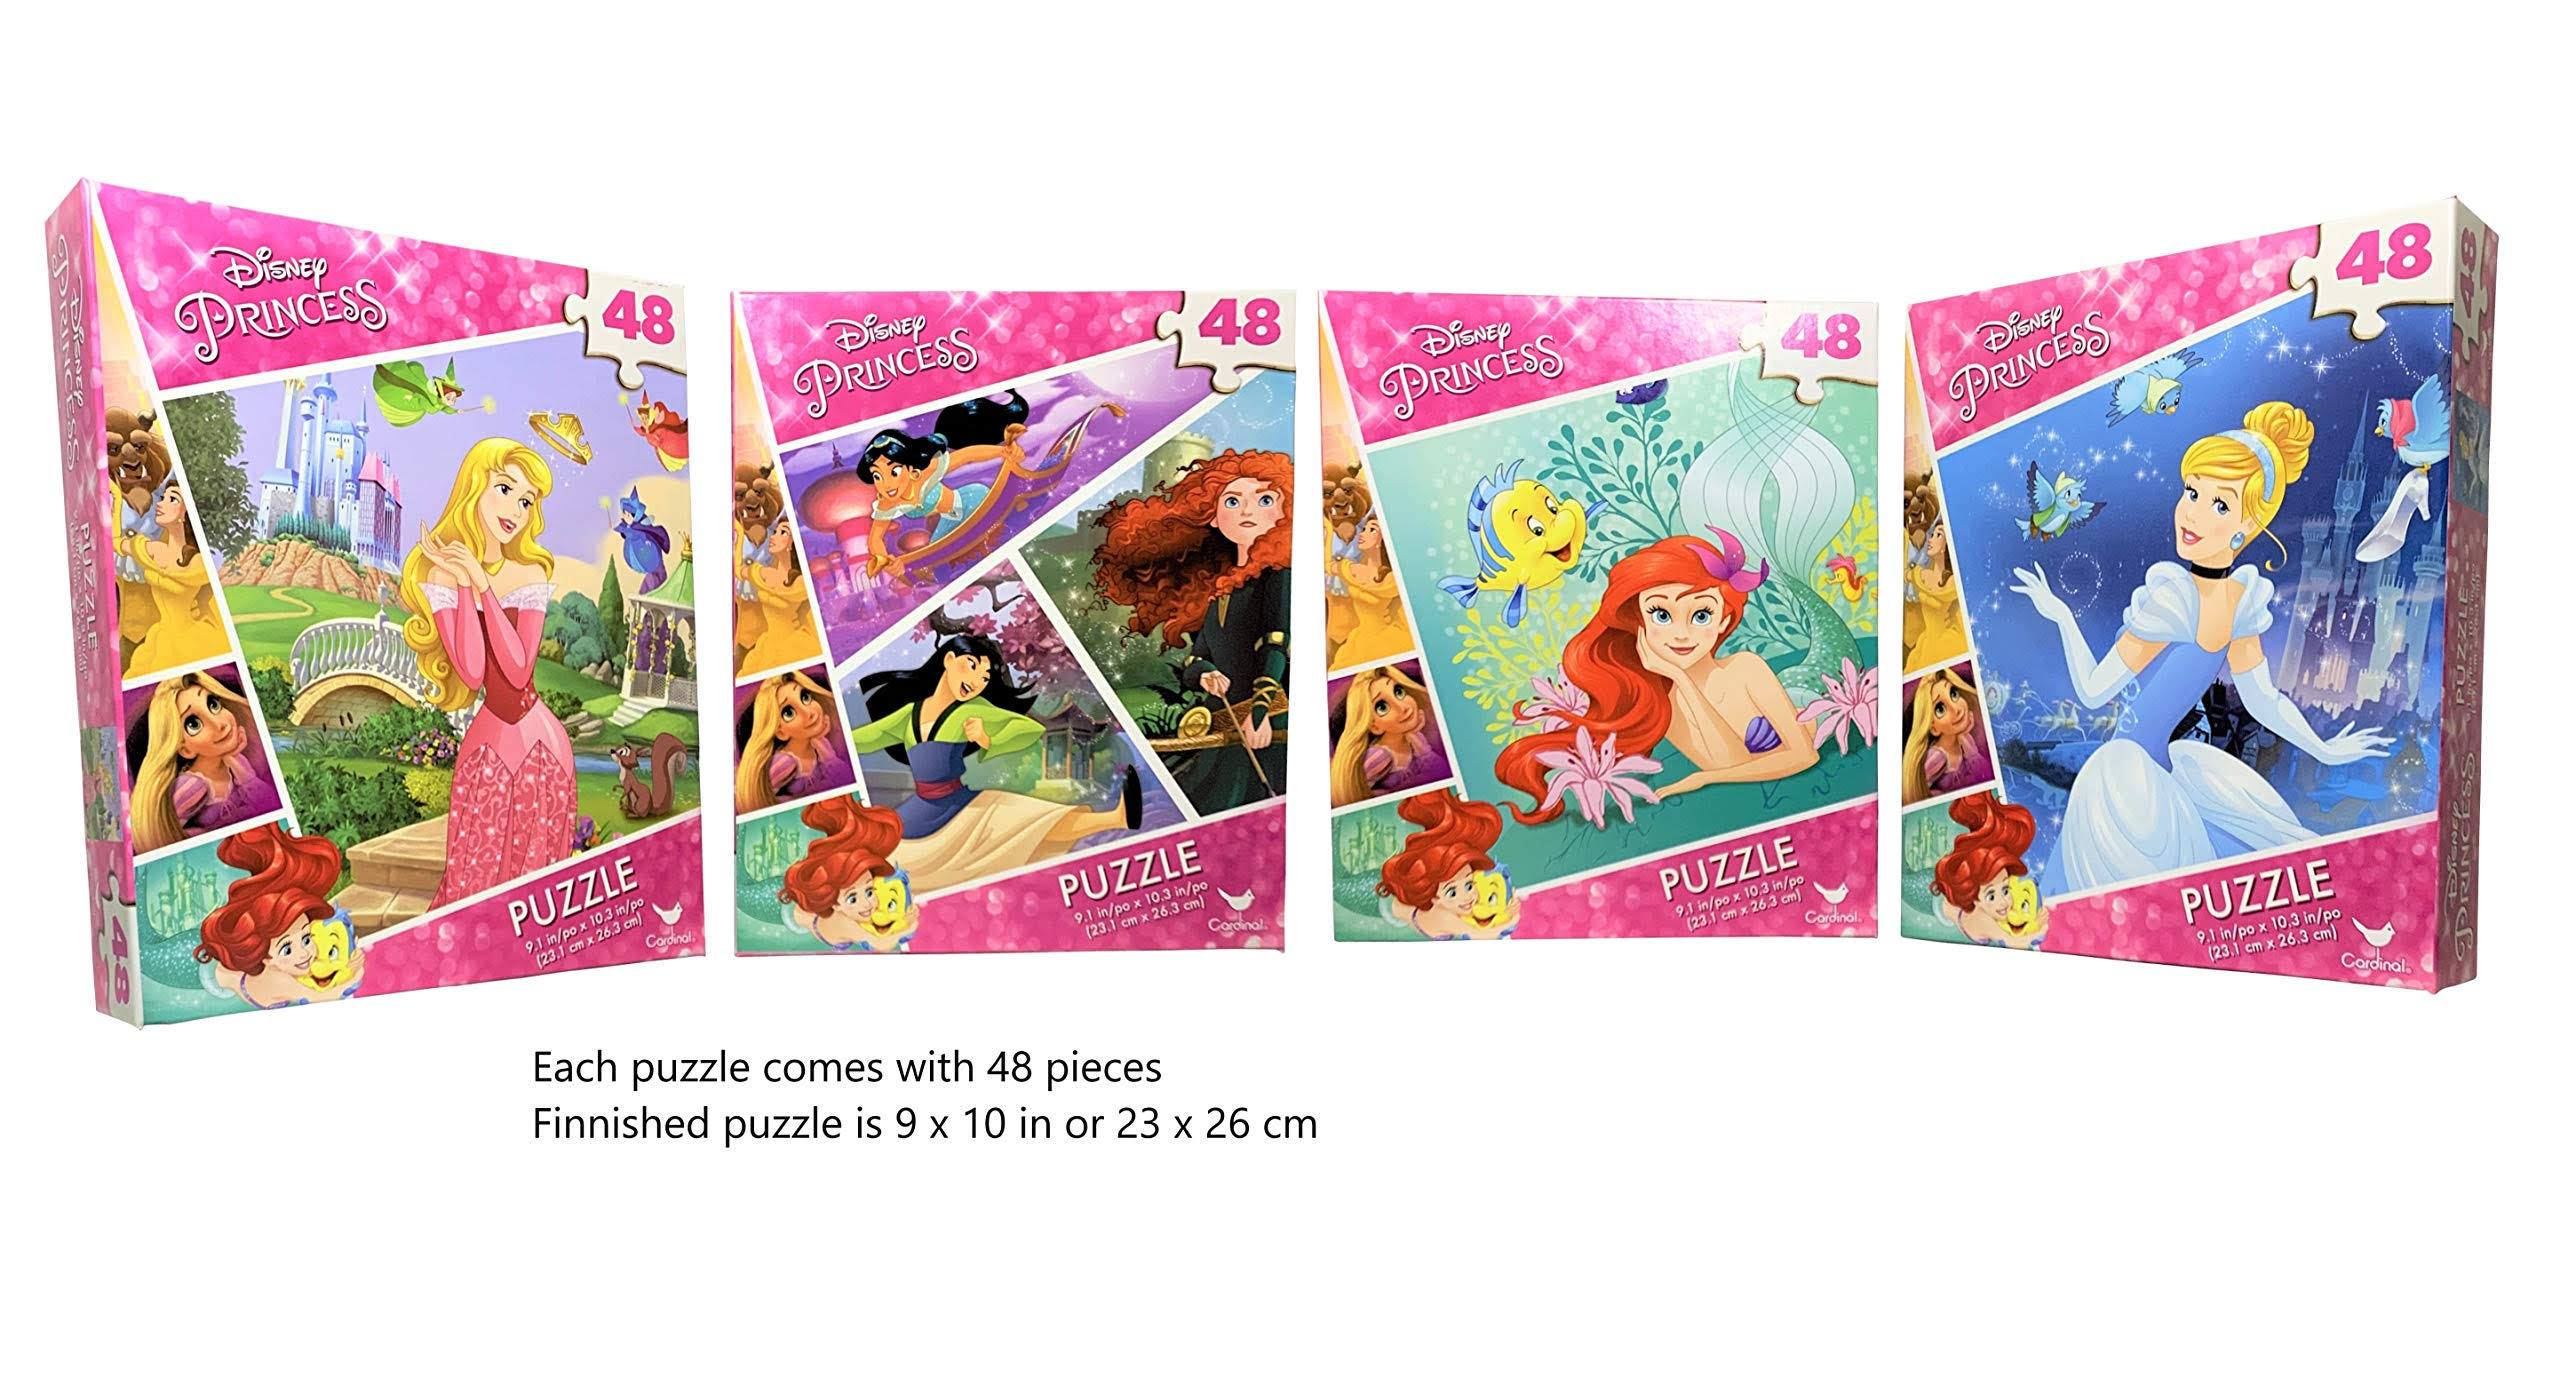 Disney Princess 4-Pack Puzzle Combo - 48 Pieces Each